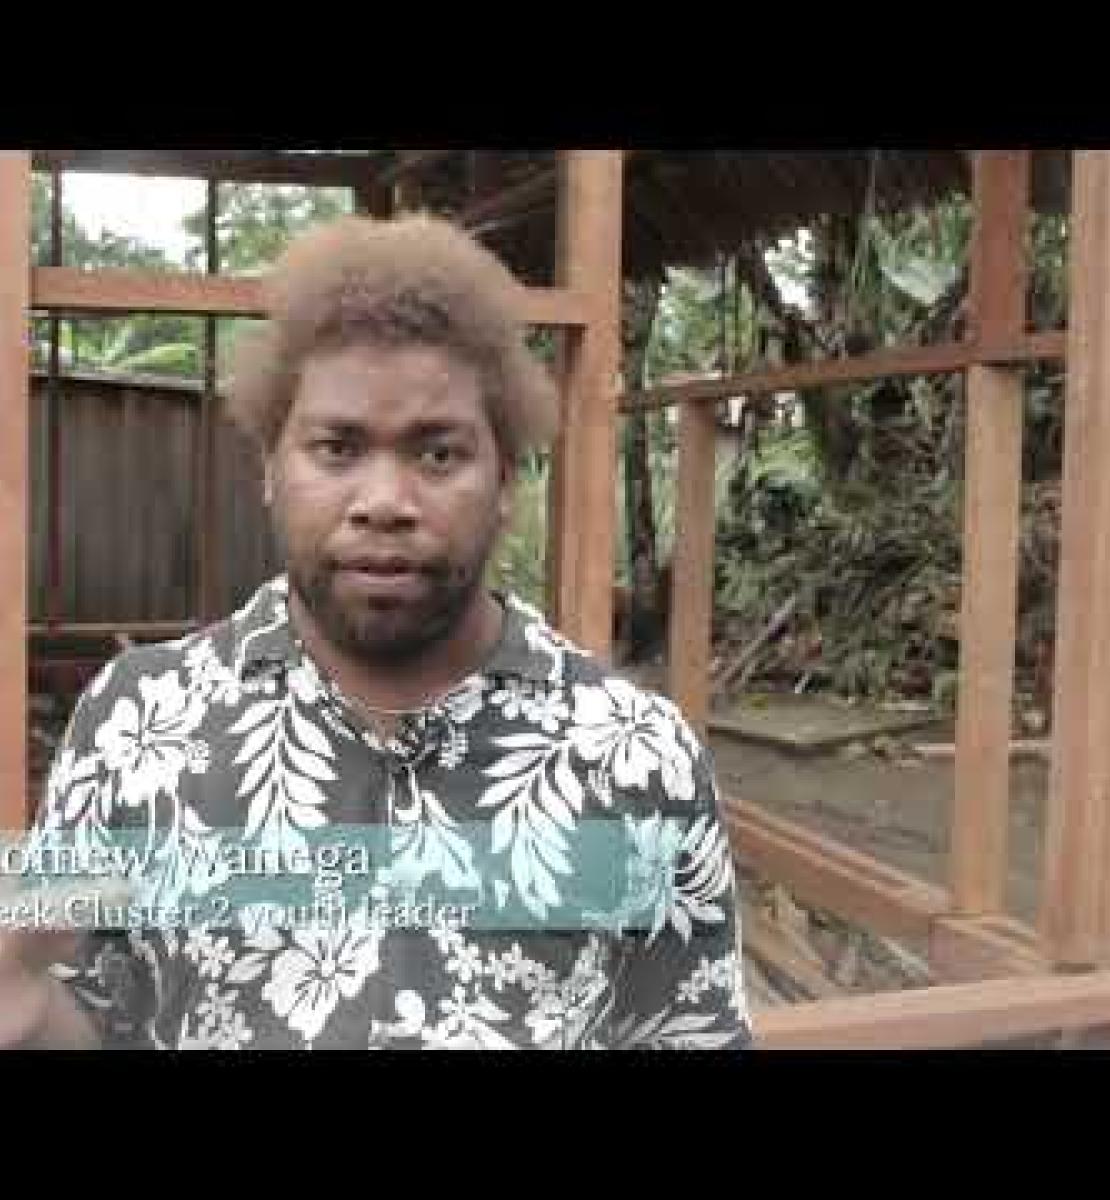 بناء شبكات اجتماعية بقيادة الشباب في المناطق النائية من جزر سليمان